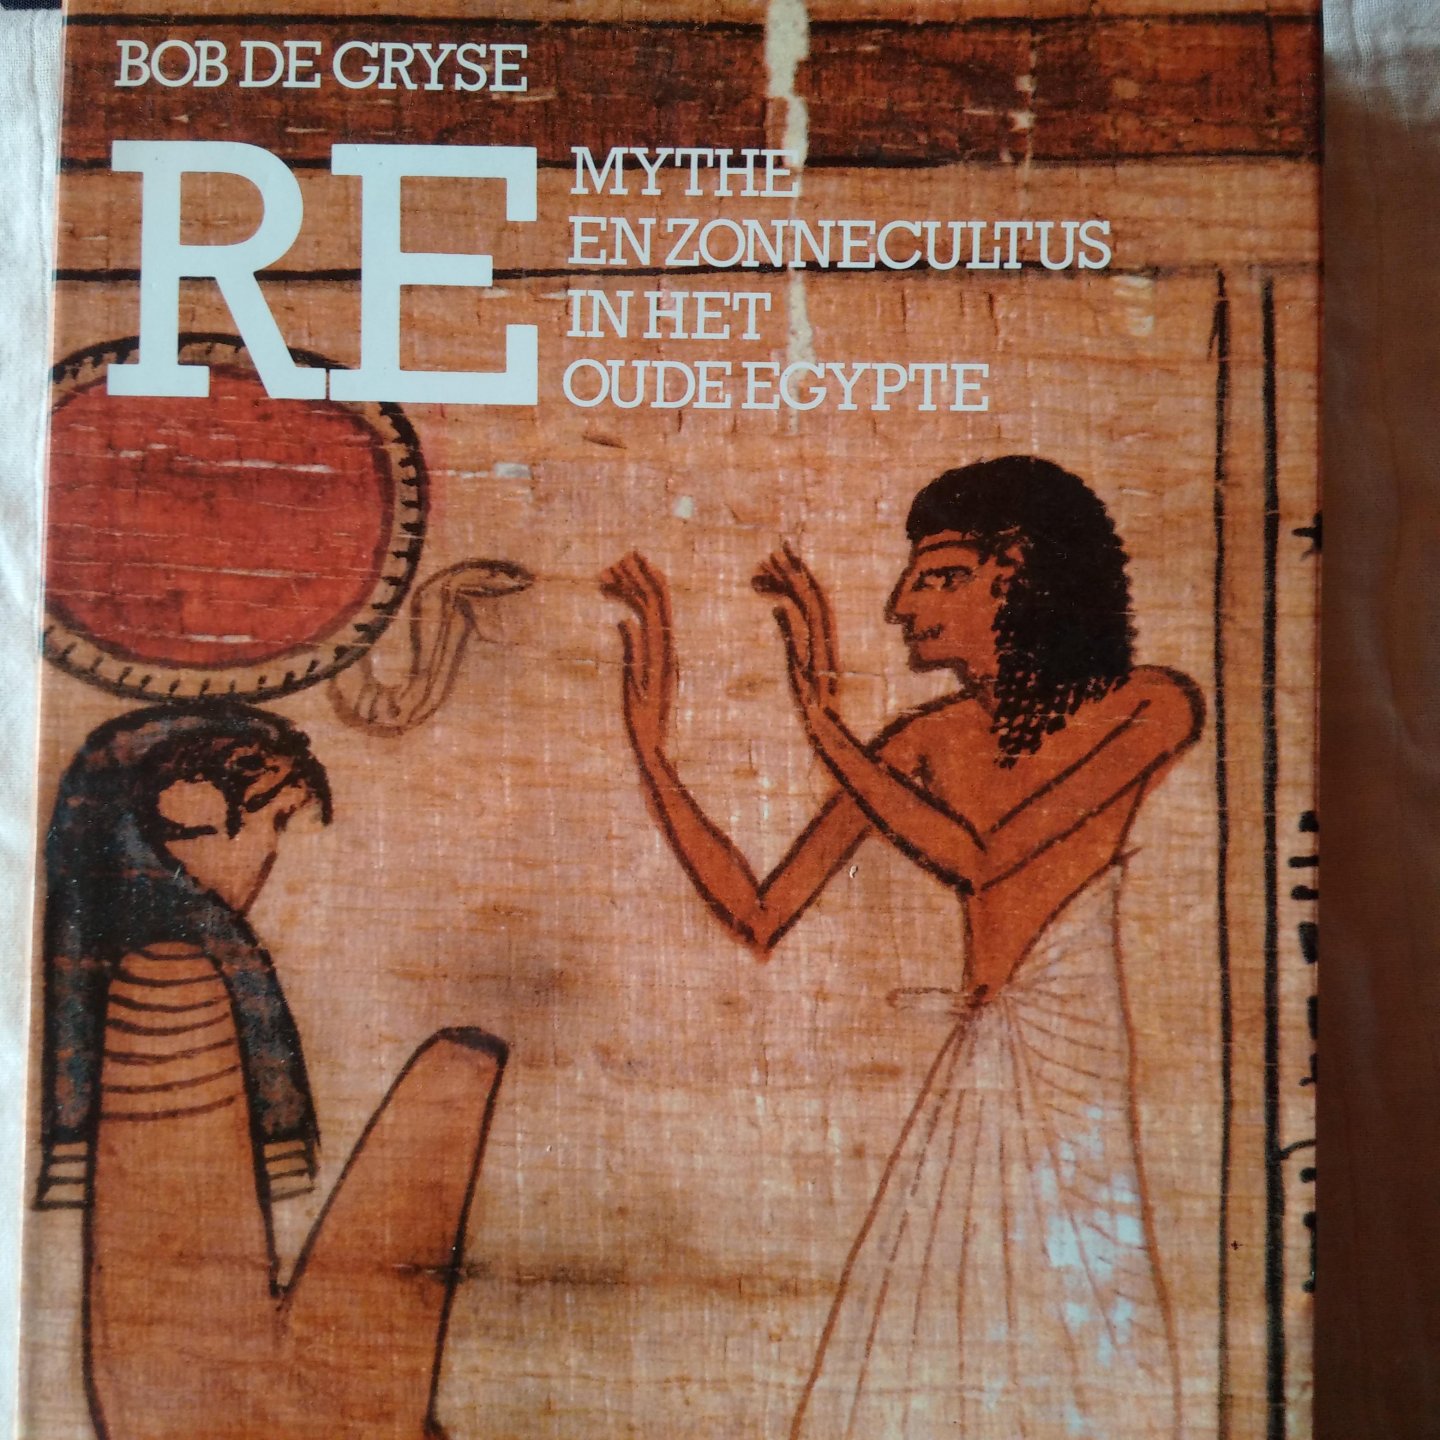 Gryse, Bob de - Re. Mythe en zonnecultus in het oude Egypte